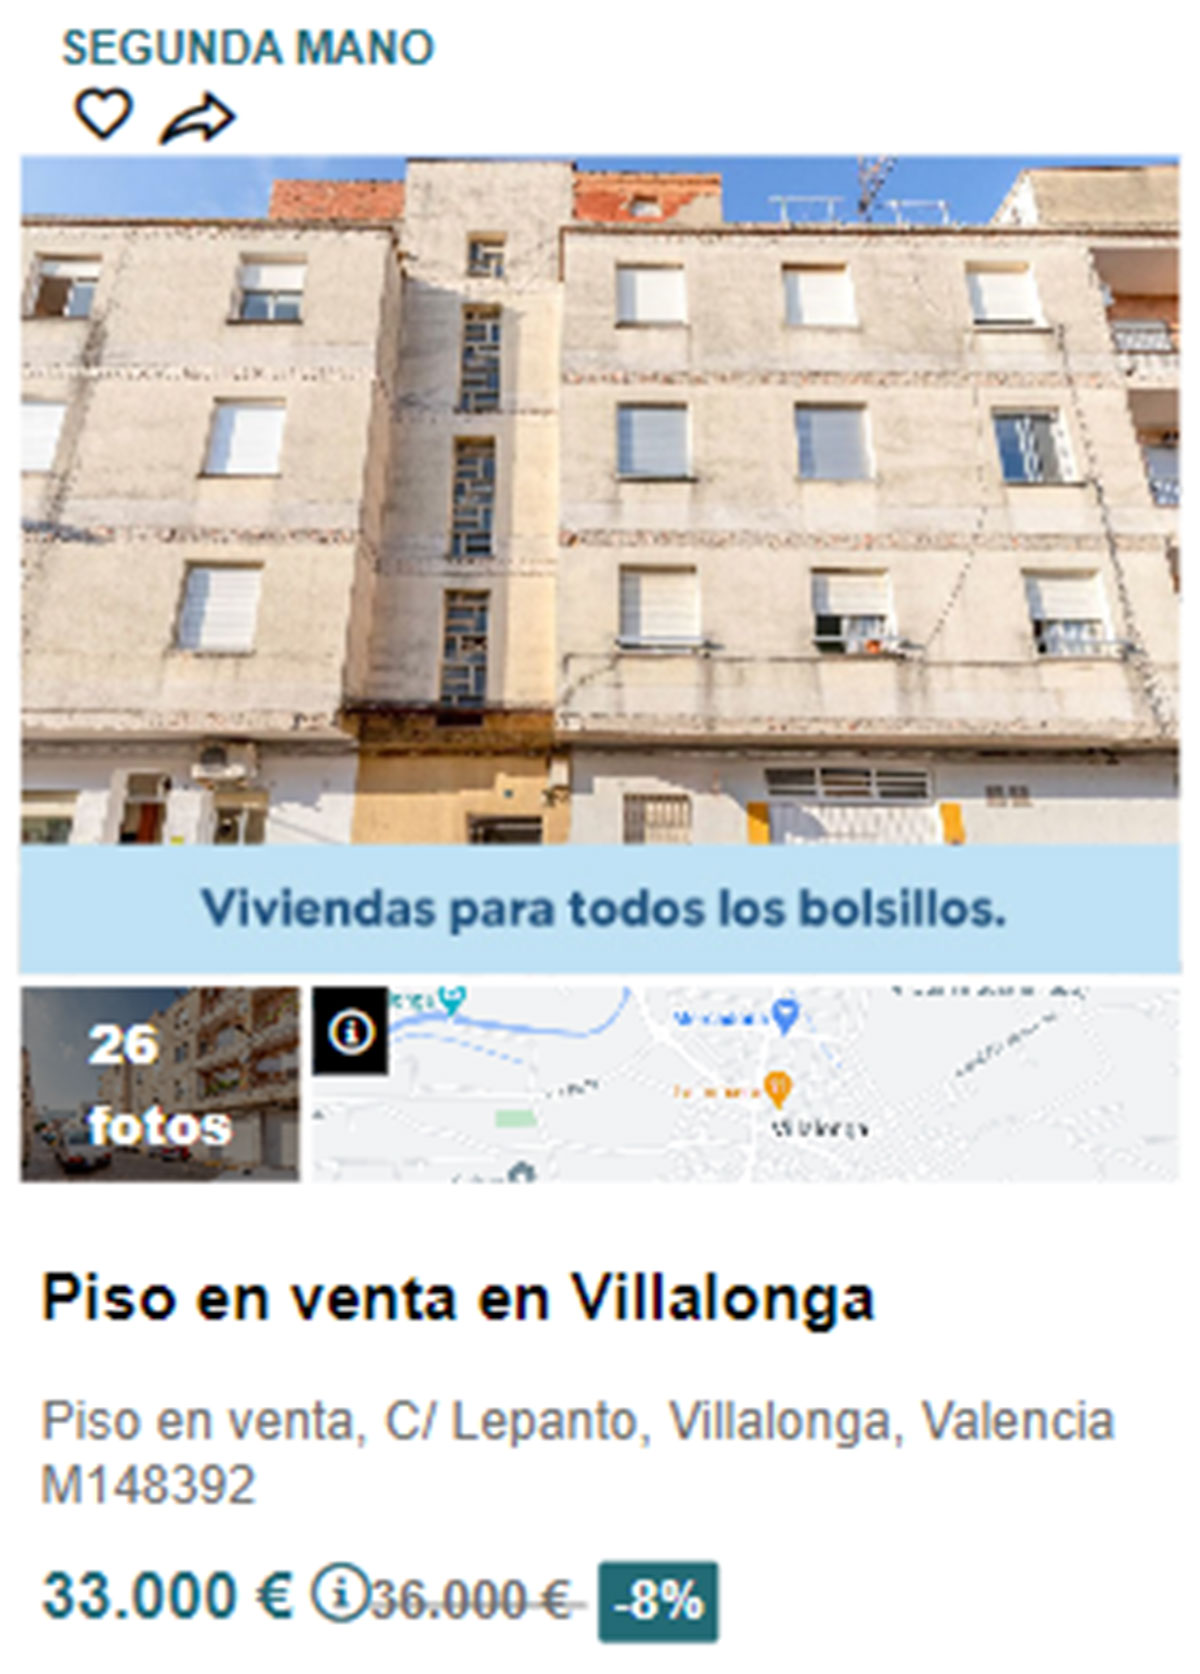 Piso en pueblos de Valencia por 33.000 euros